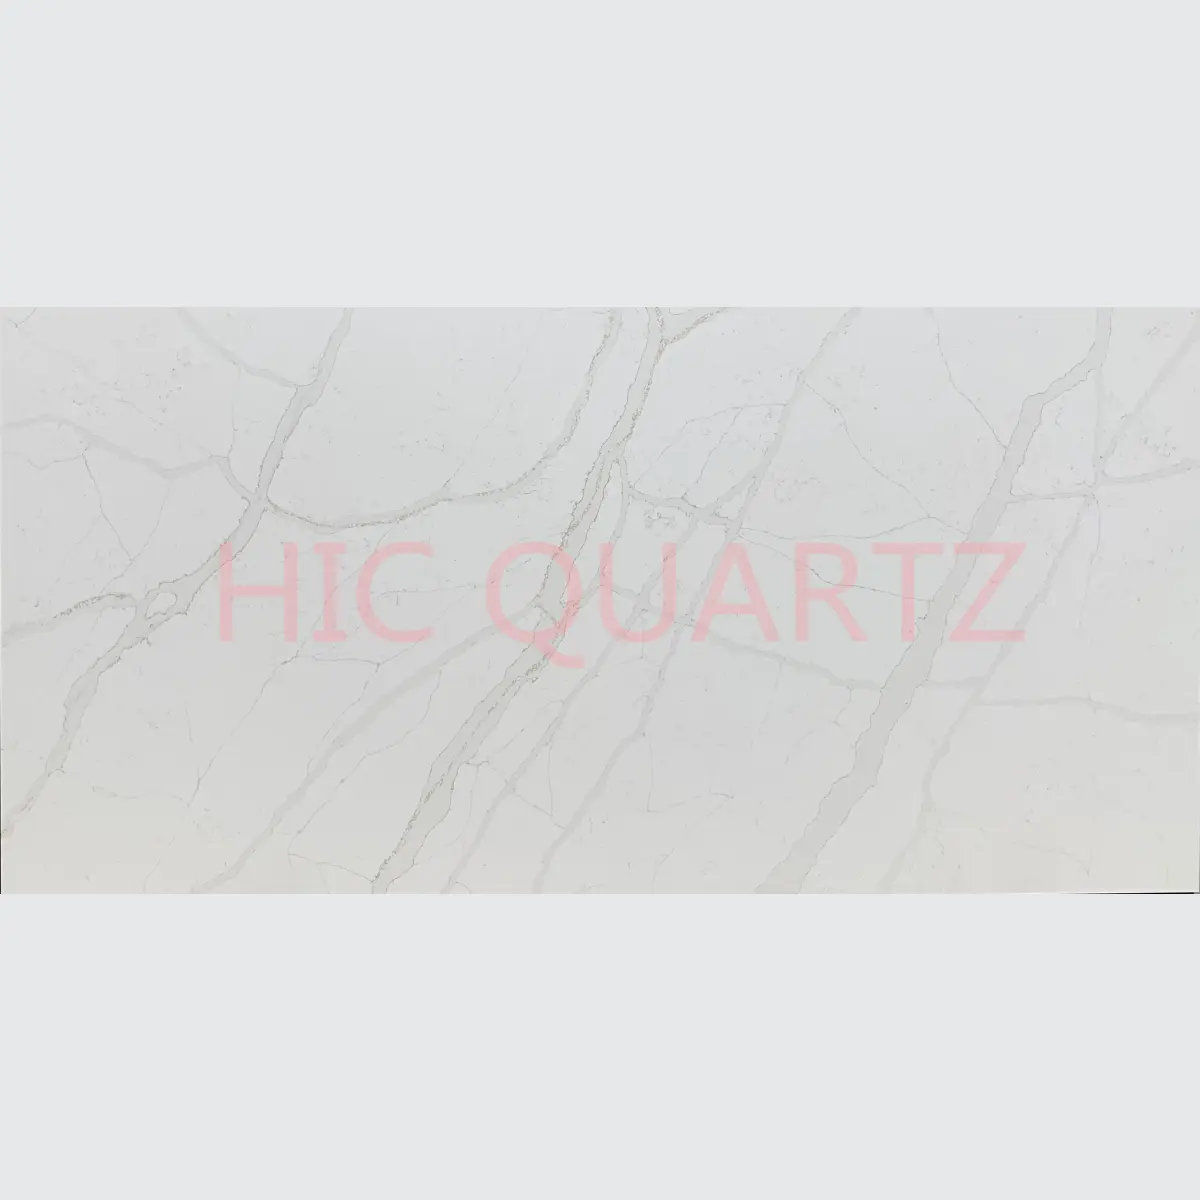 HIC QUARTZ Calacattaホワイト免税人工クォーツストーンスラブキッチンカウンタートップ、競争力のある価格セールチョイストップエッジ